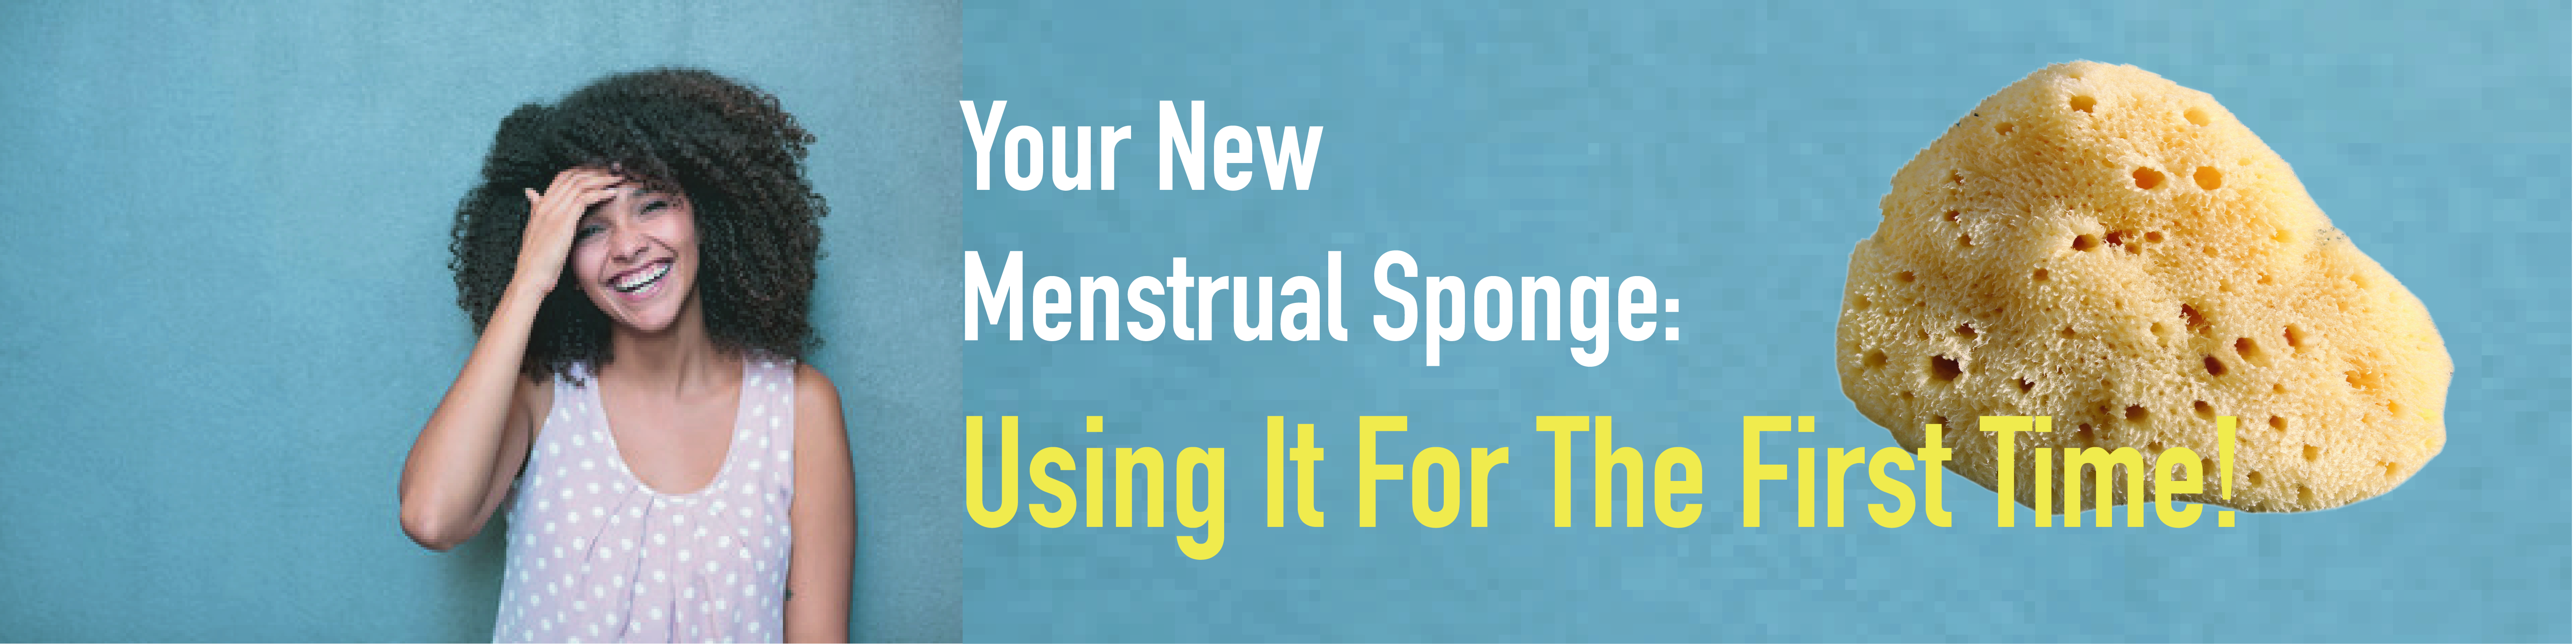 Your New Menstrual Sponge. Where To Begin?